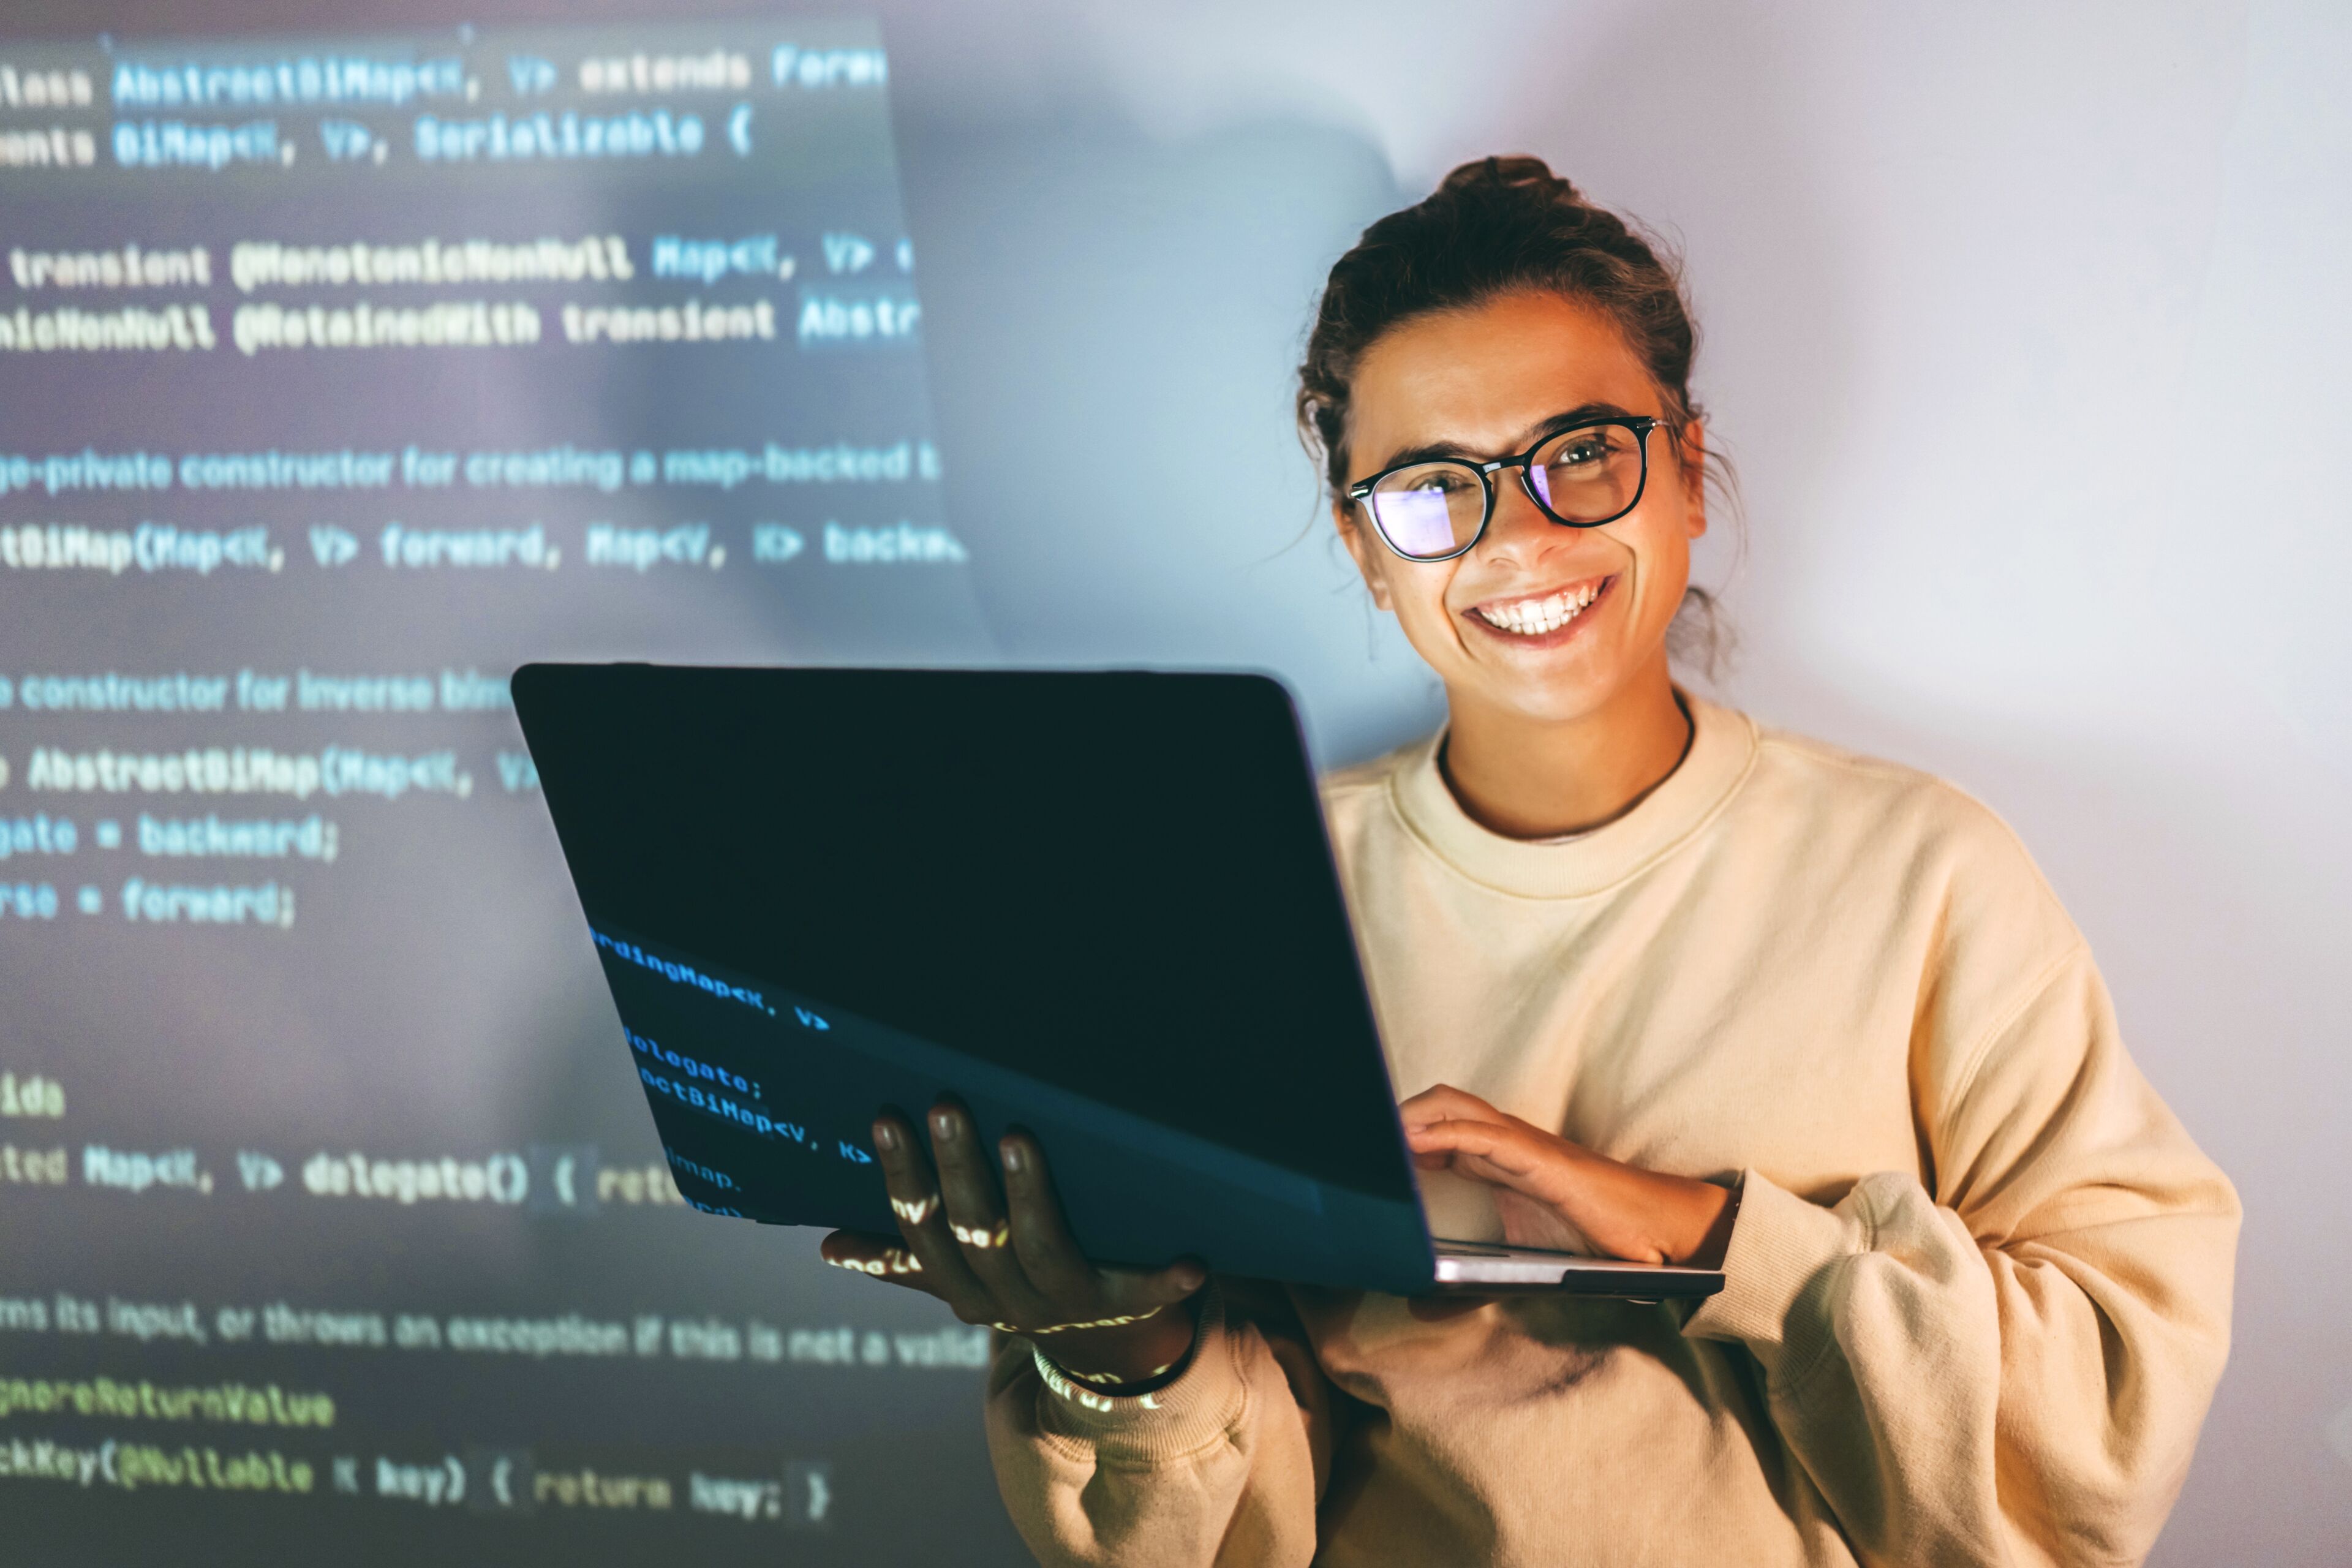 Une femme souriante aux lunettes tenant un ordinateur affichant du code, dégageant un sentiment de réussite et d'expertise en programmation.